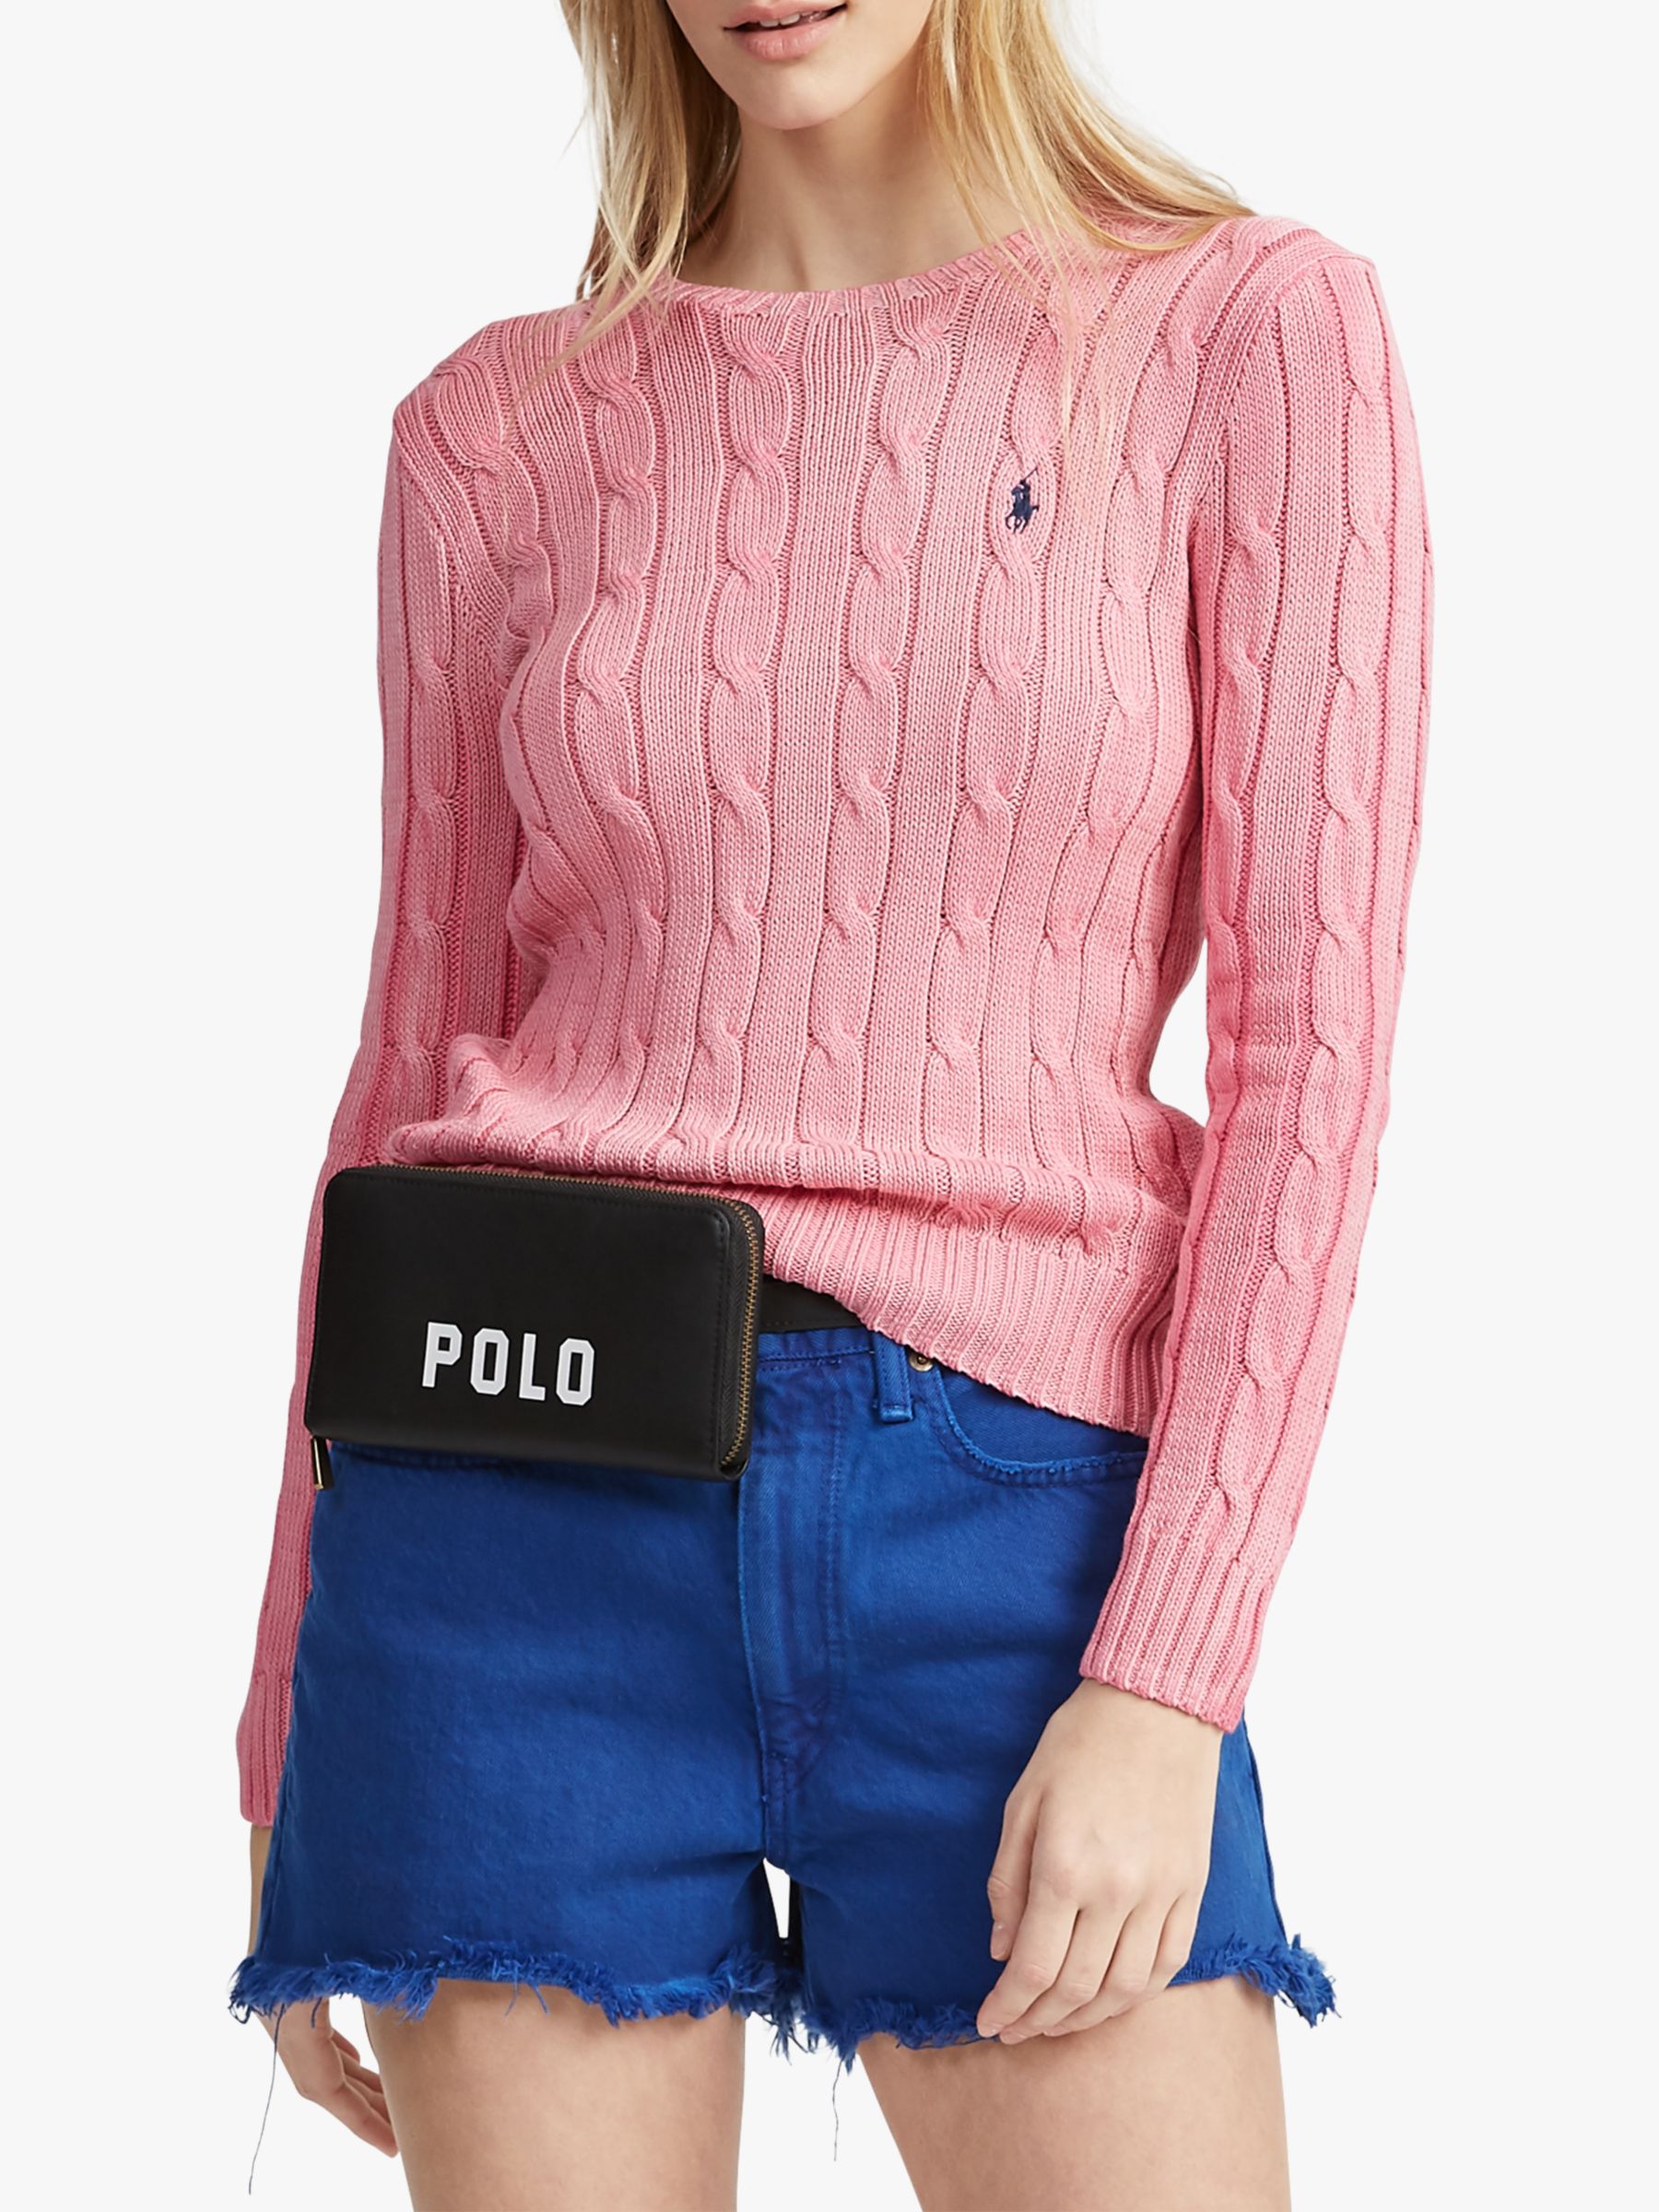 Polo Ralph Lauren Julianna Knitted Cotton Sweater